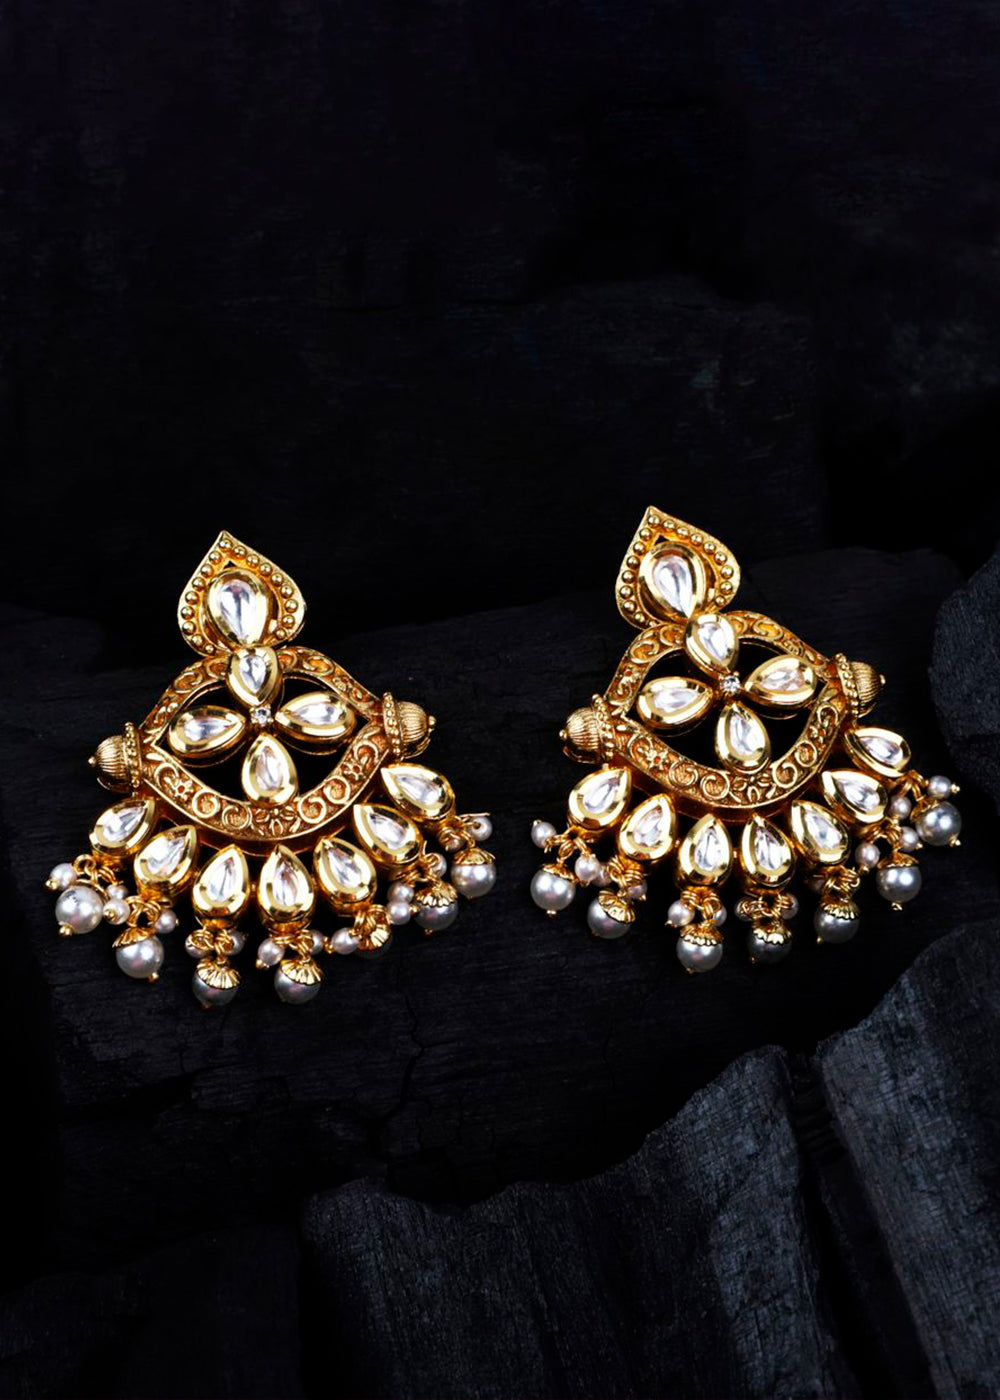 Golden & White Kundan Earrings having Pearls